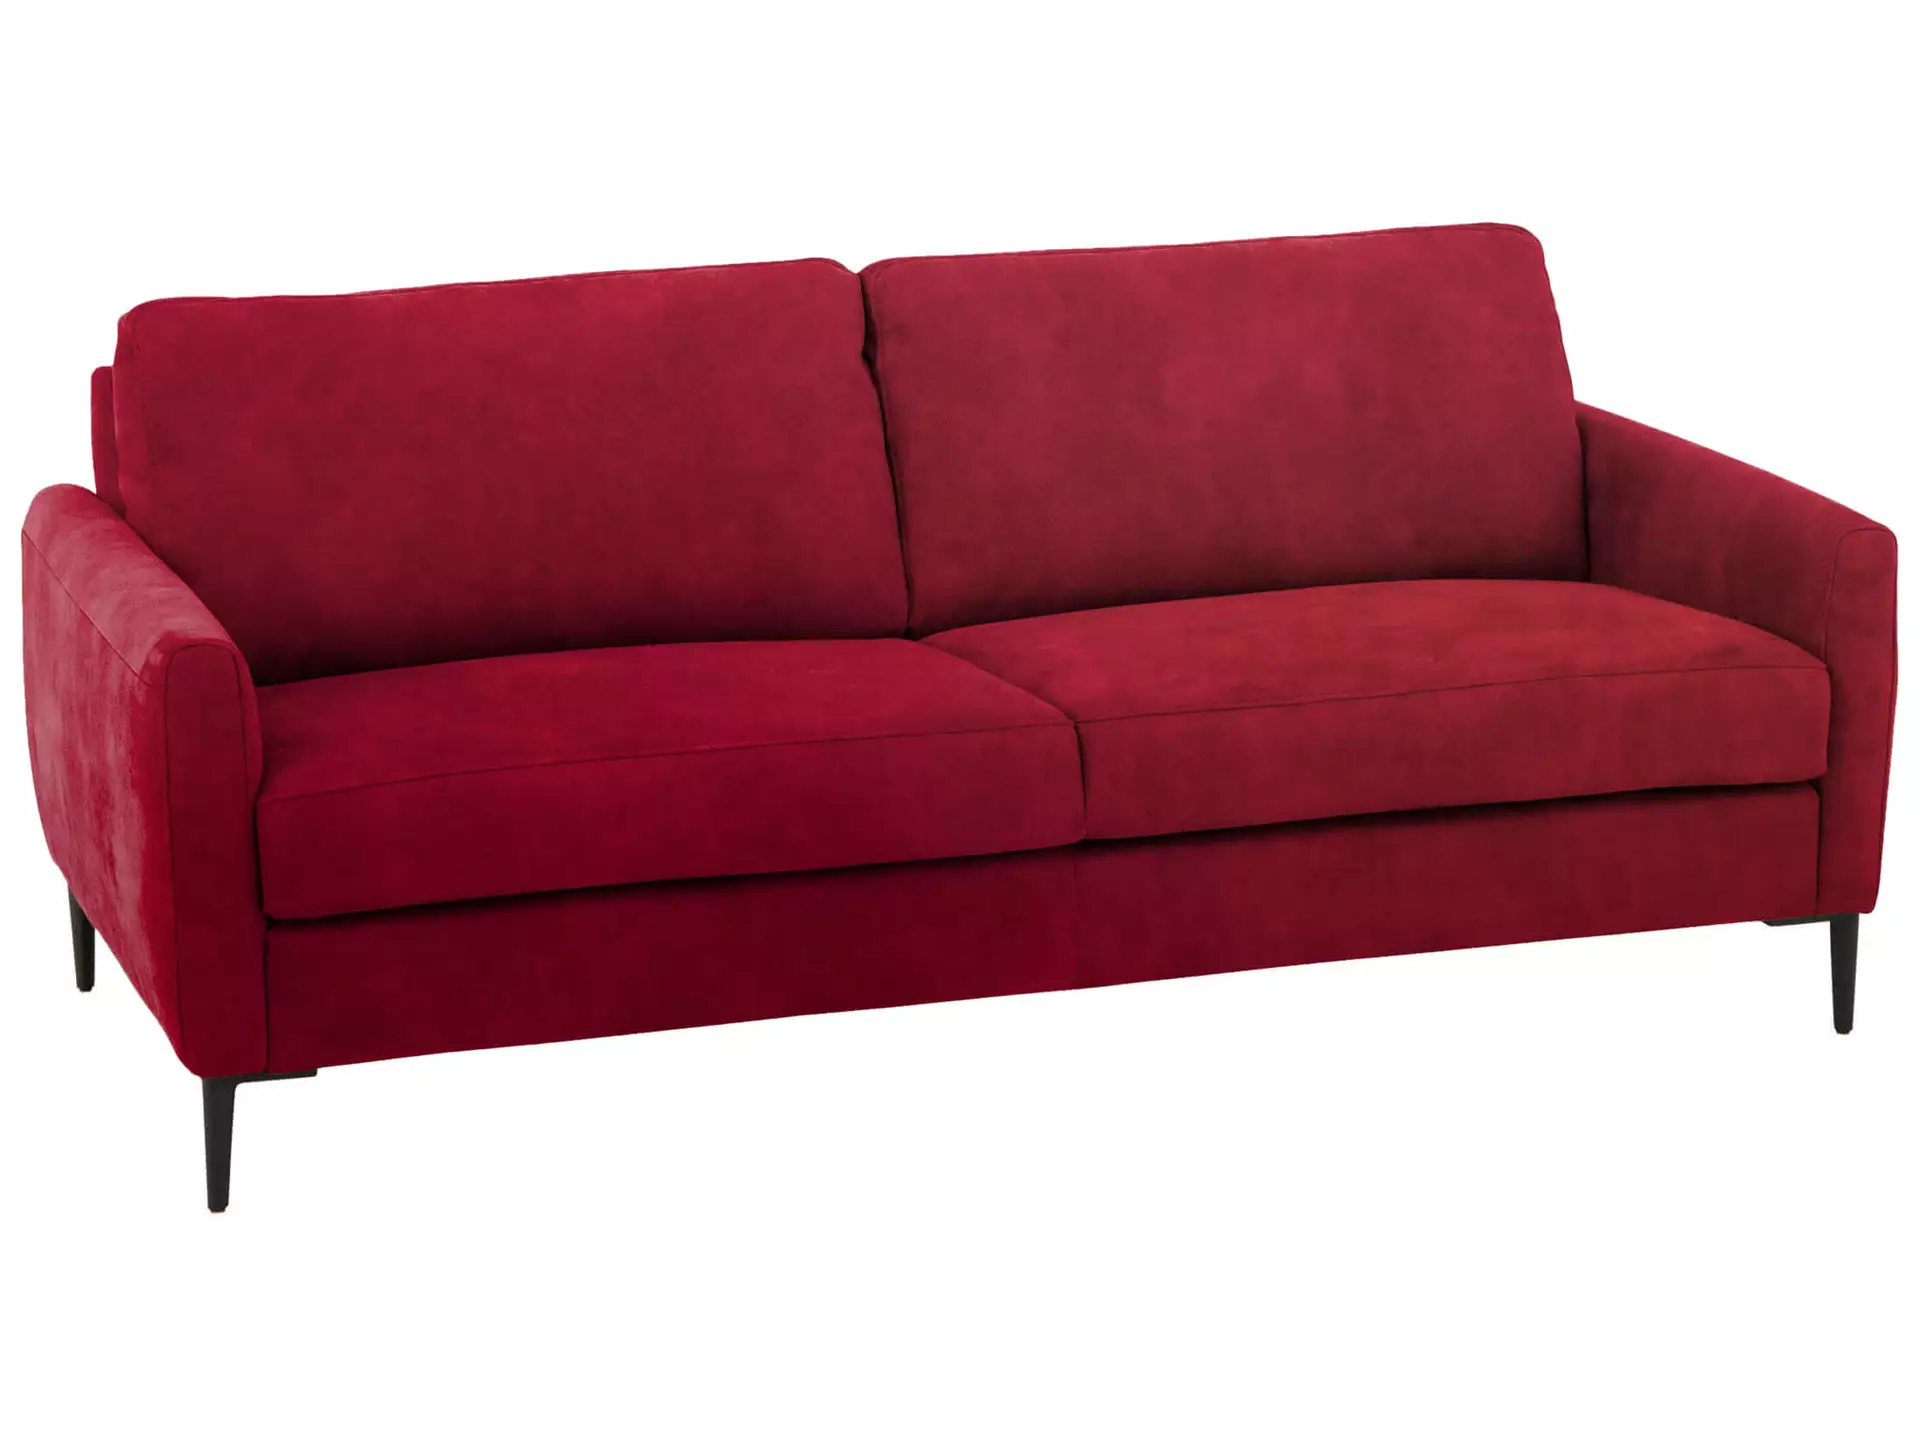 Sofa Antonio Basic B: 176 cm Schillig Willi / Farbe: Ruby Red / Material: Leder Basic